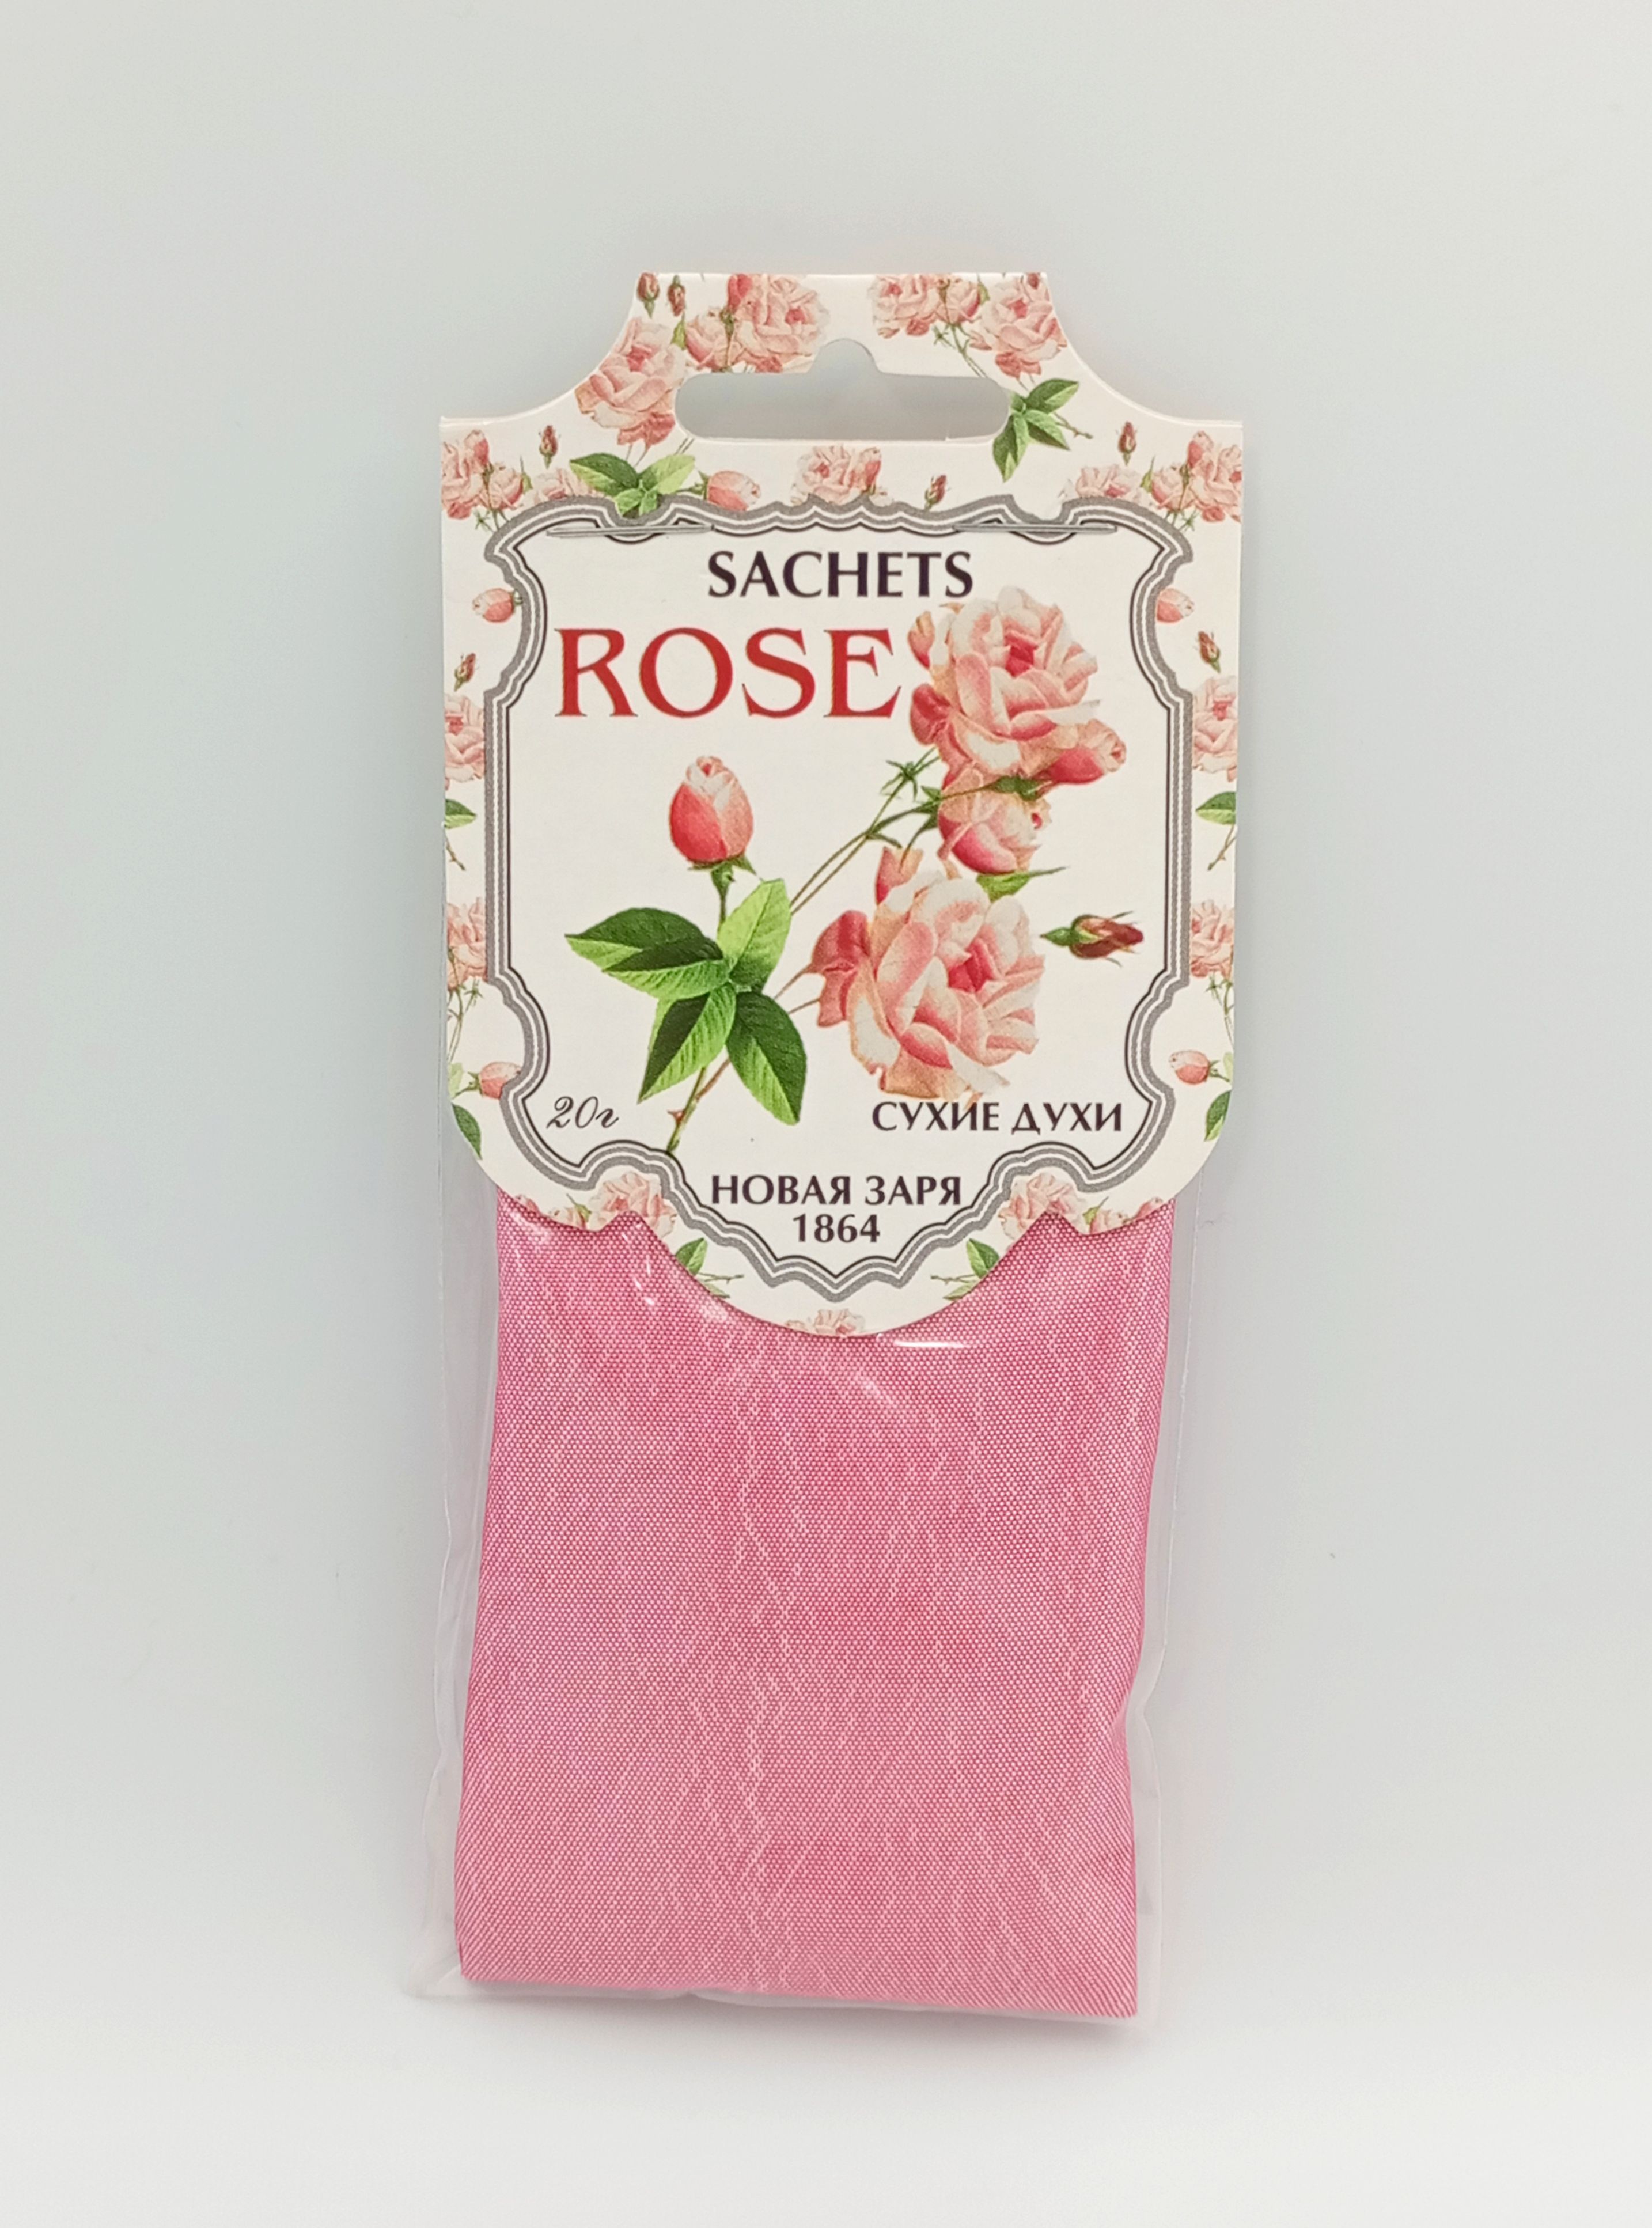 Новая Заря Sachets Rose Сухие духи-саше для шкафов и помещений Роза 20 гр